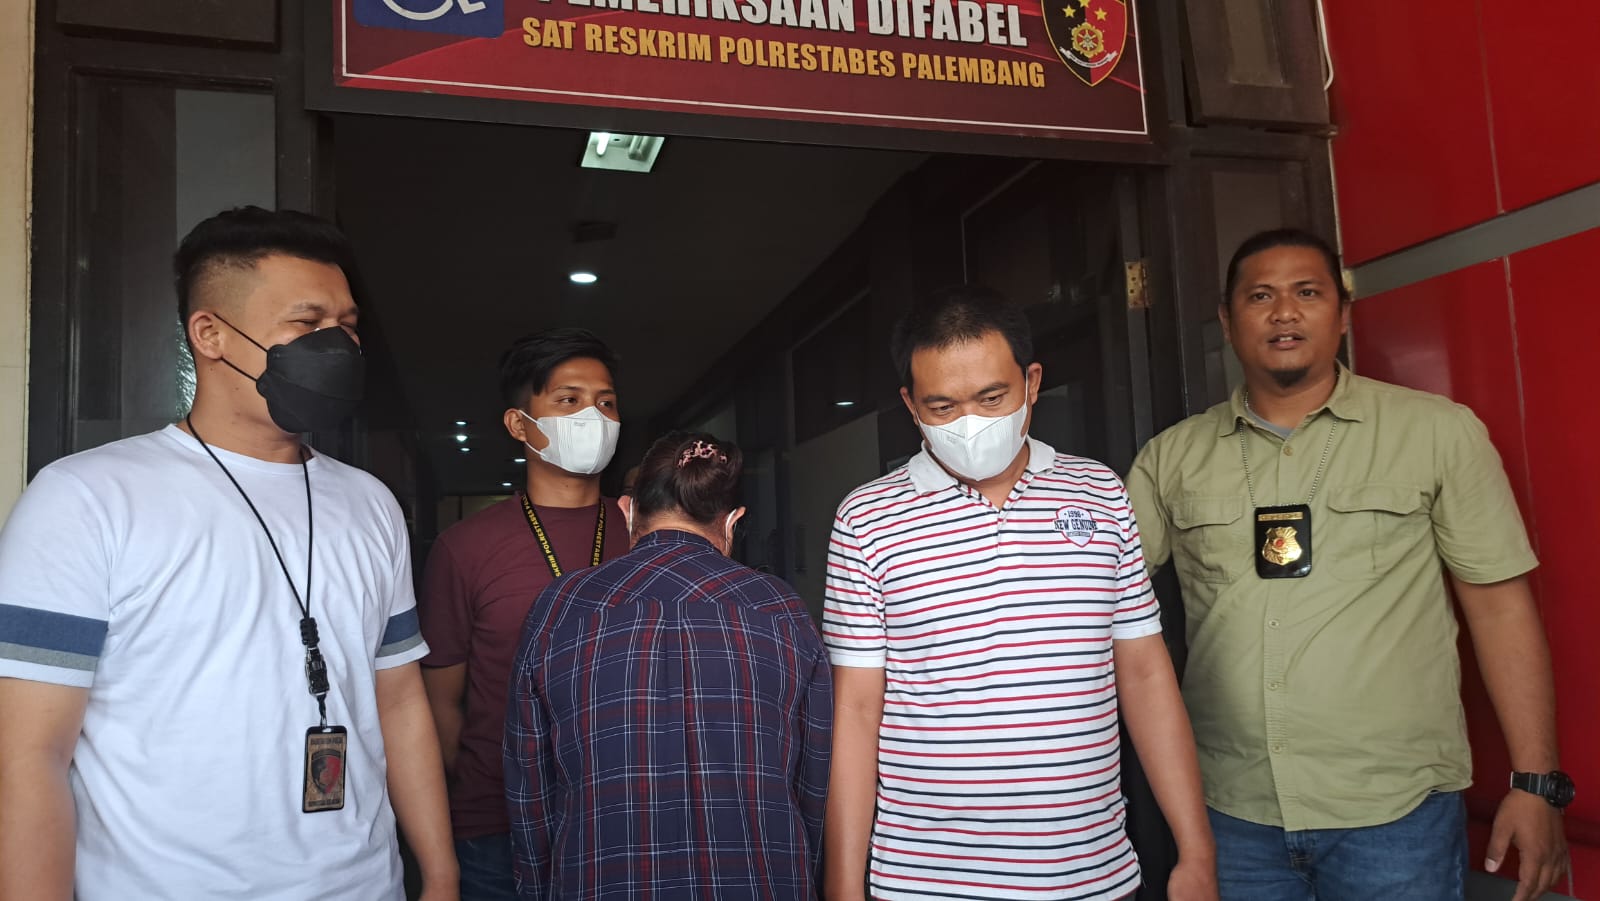 Pencopet di Palembang Trade Center Mall yang Viral di Media Sosial Ditangkap, Pelakunya Pasutri